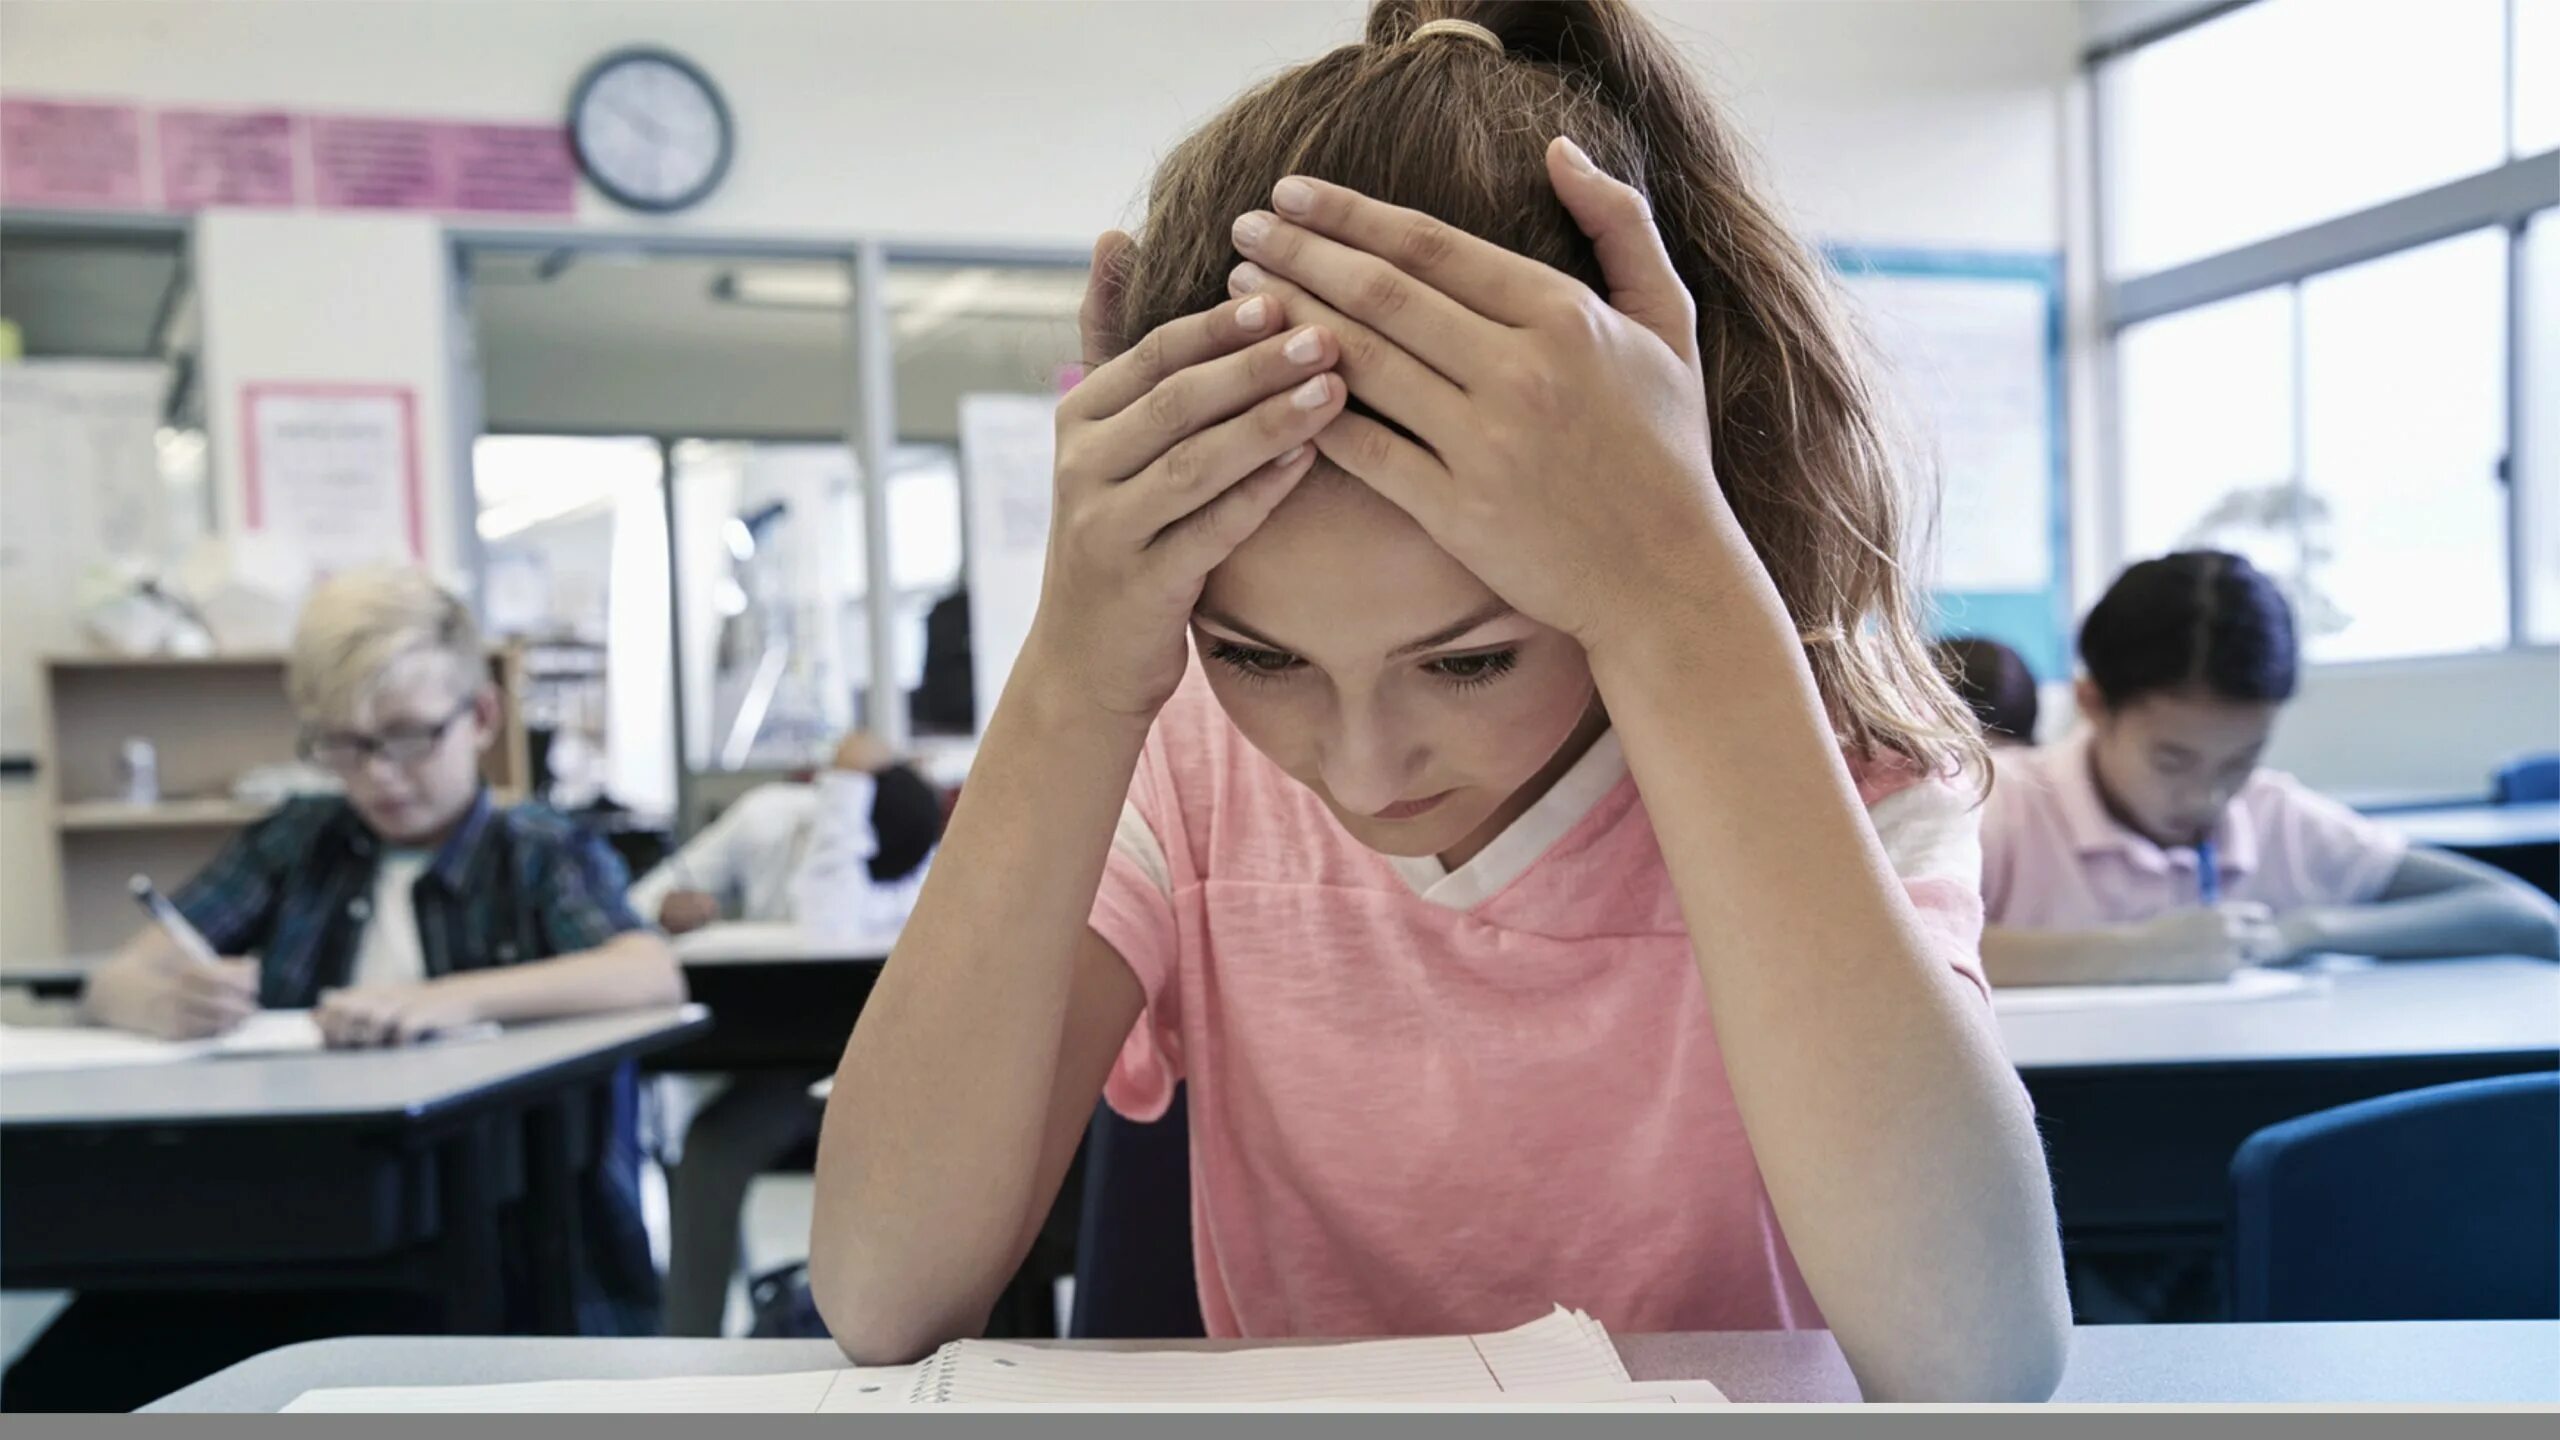 Come difficult. Дети на экзамене. Тревожность школьников. Стресс на экзамене. Учеба грусть.